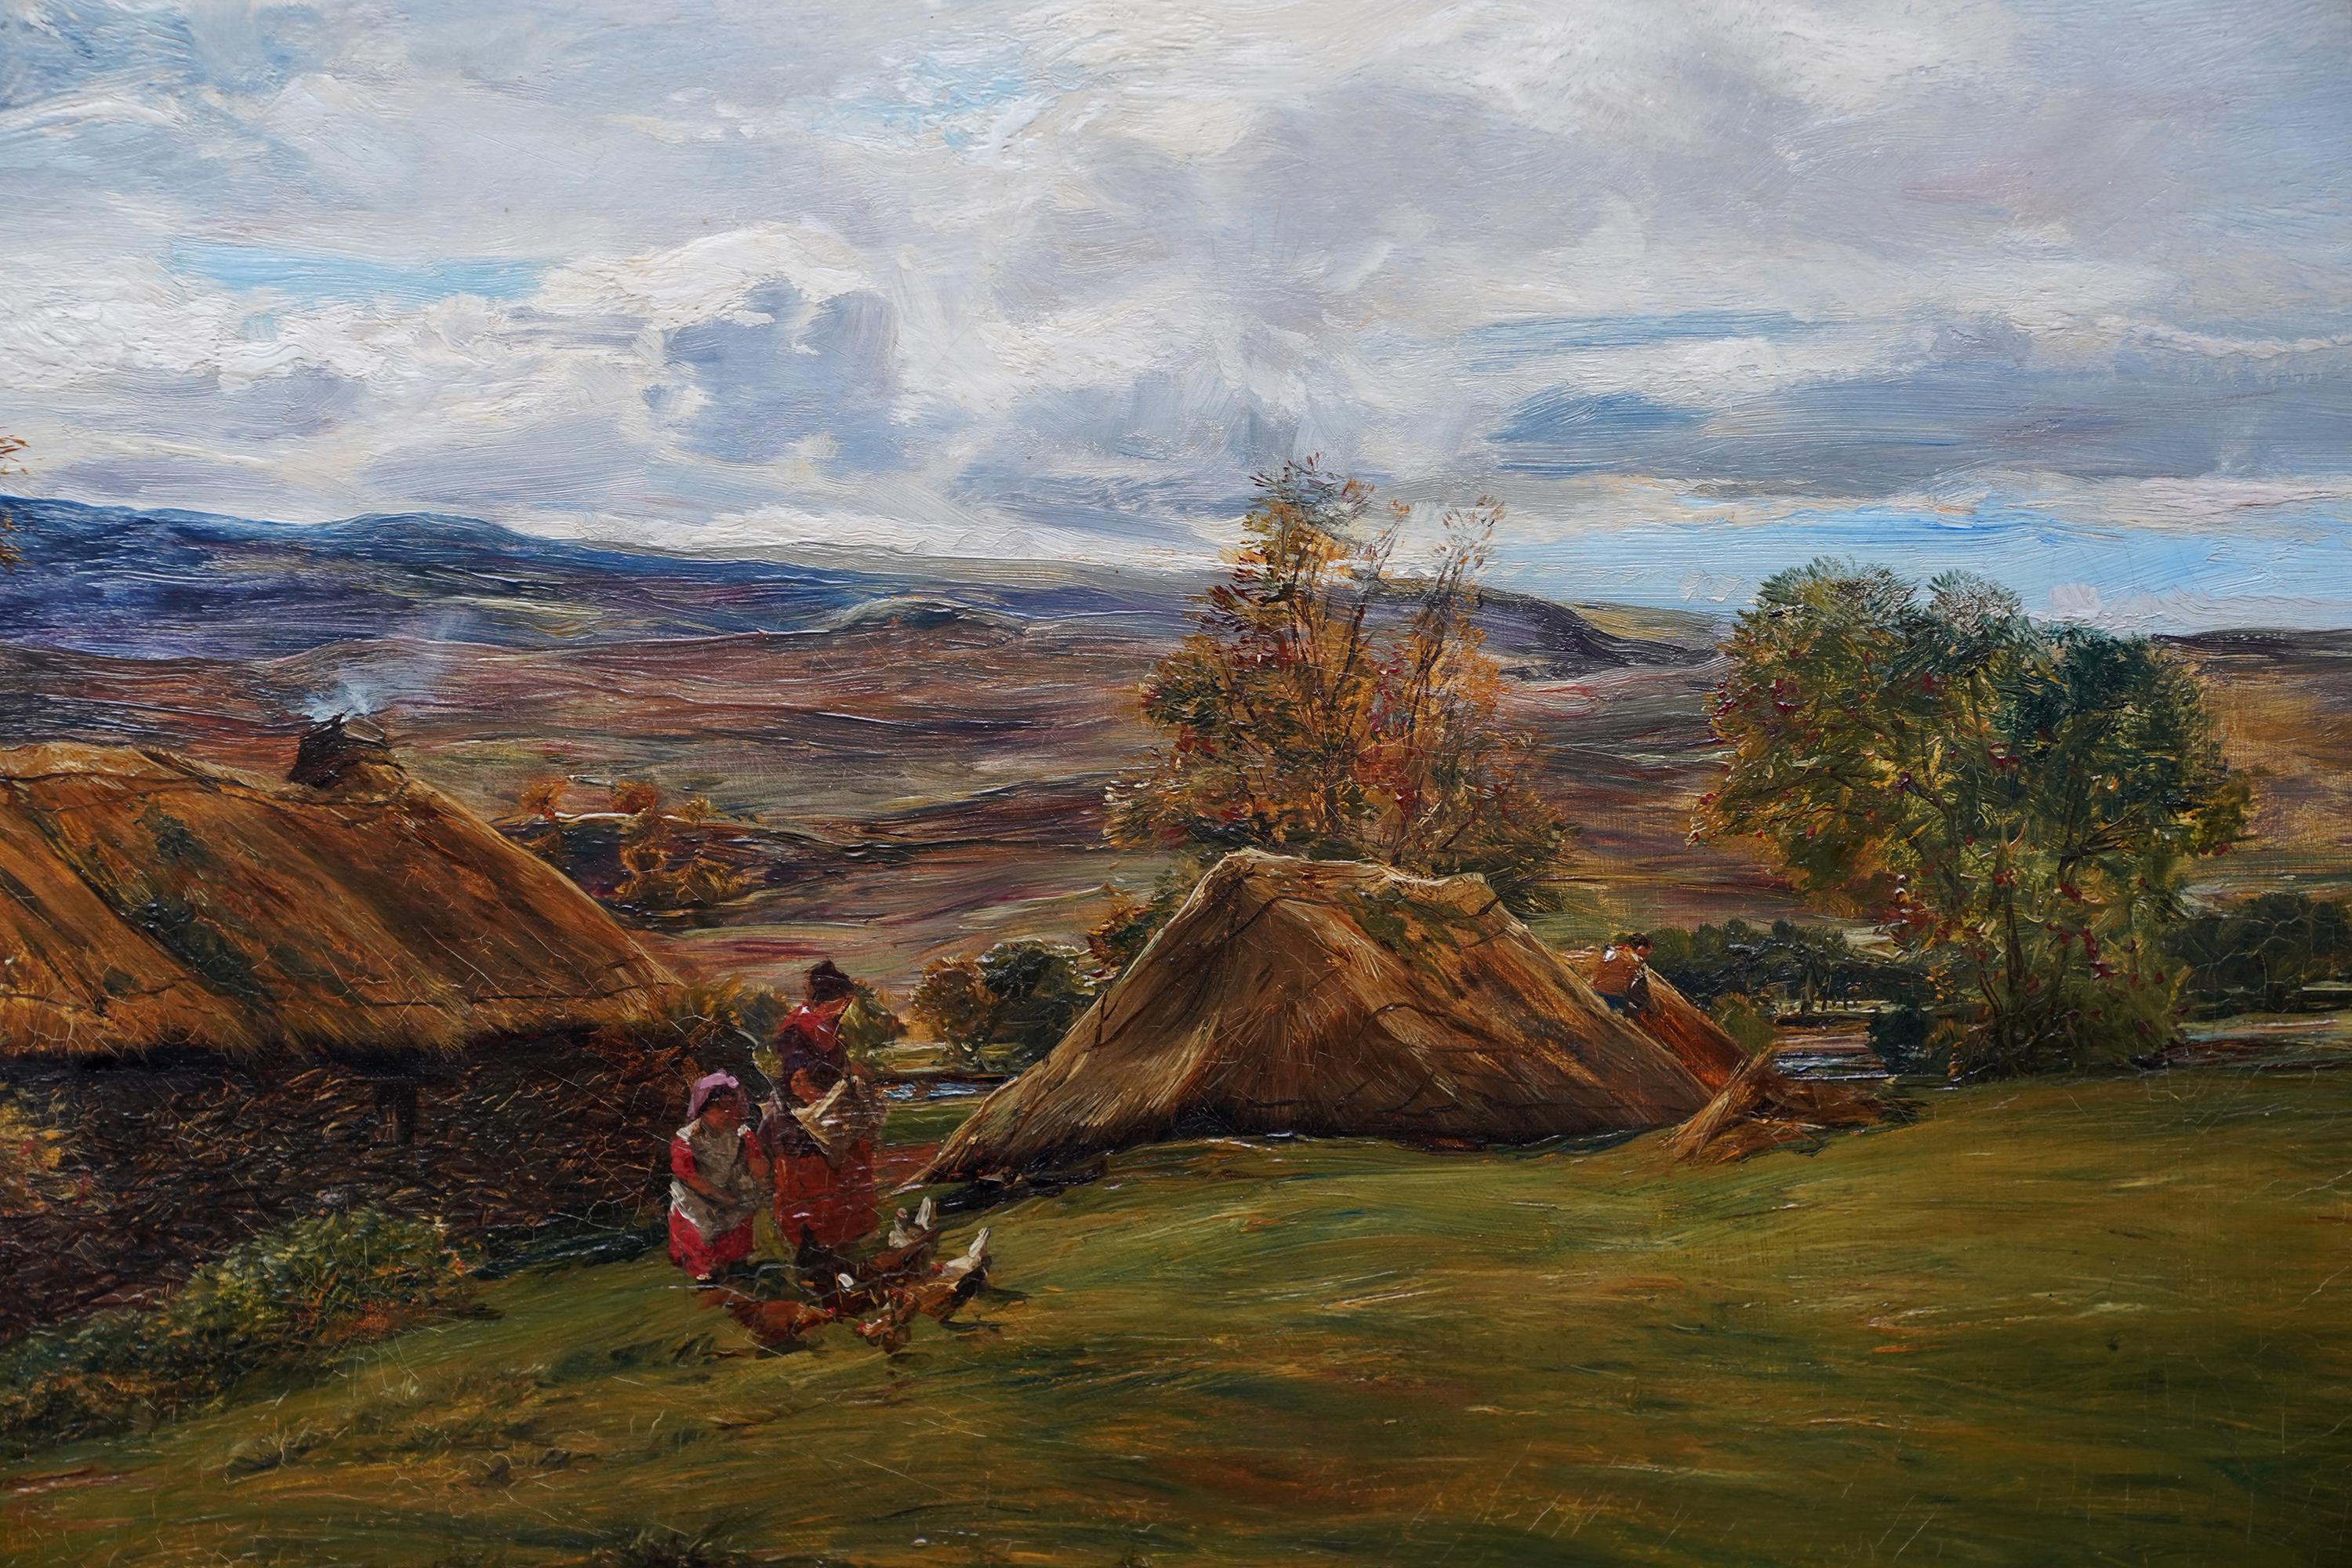 Dieses schöne viktorianische Landschafts-Ölgemälde stammt von dem bekannten schottischen Künstler und vielseitigen Aussteller Alexander Fraser. Es wurde um 1870 gemalt und zeigt eine bäuerliche Landschaft mit einer Mutter und einem Kind, die im